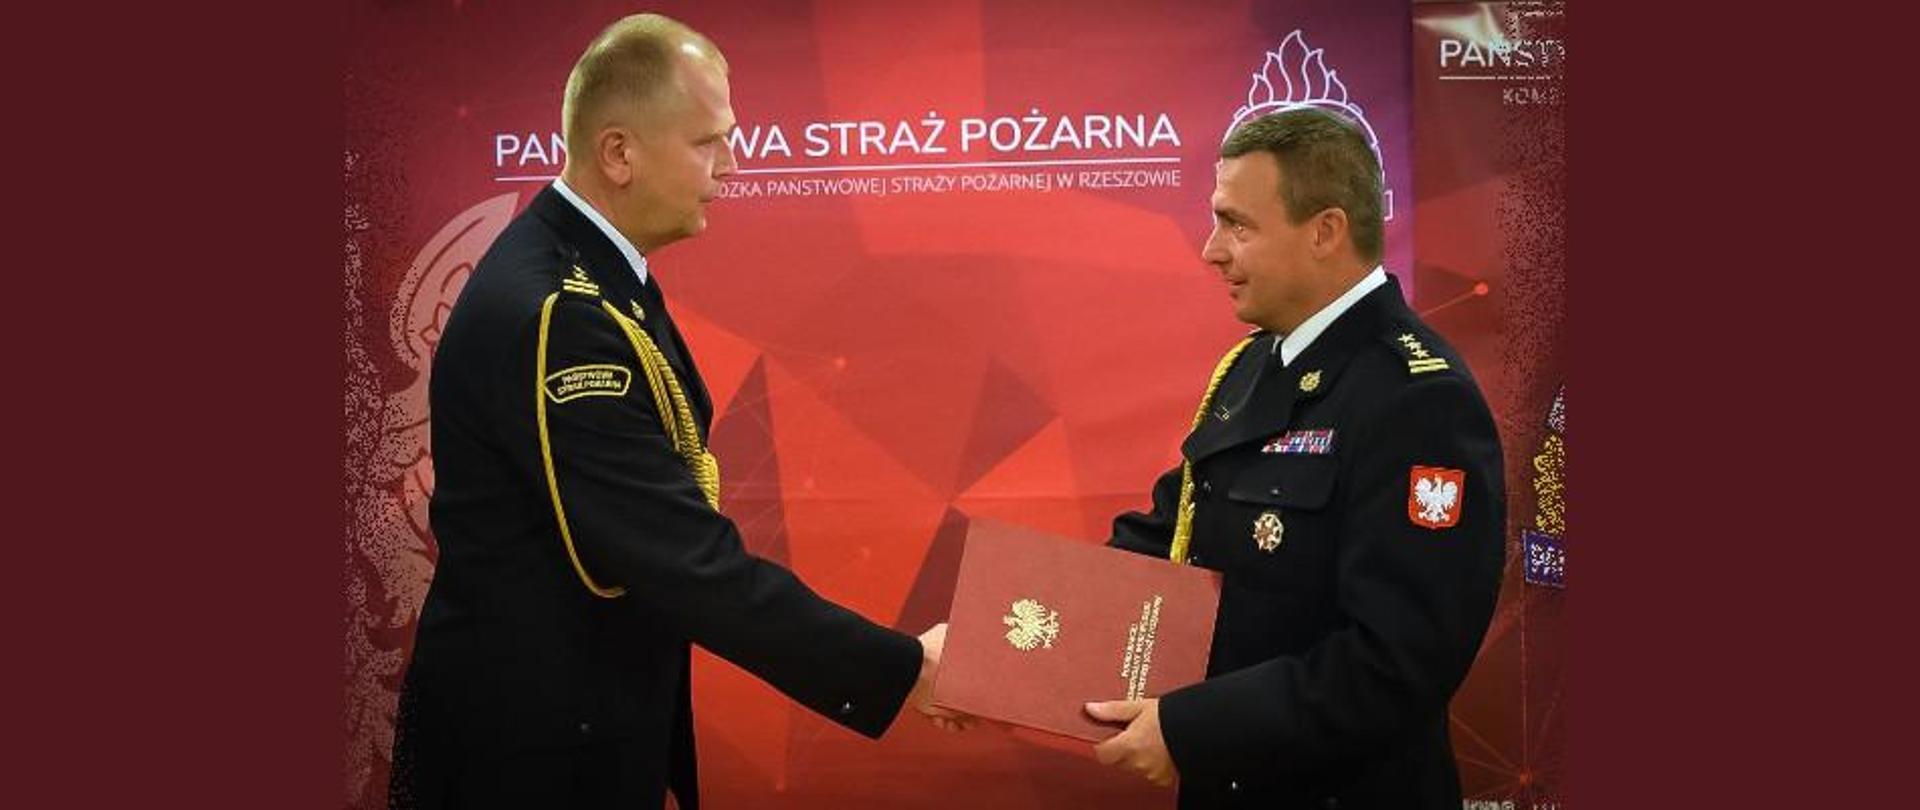 Na zdjęciu widzimy Podkarpackiego Komendanta Wojewódzkiego Państwowej Straży Pożarnej przekazującego akt powołania na stanowisko Zastępcy Komendanta Powiatowego Państwowej Straży Pożarnej w Leżajsku. 